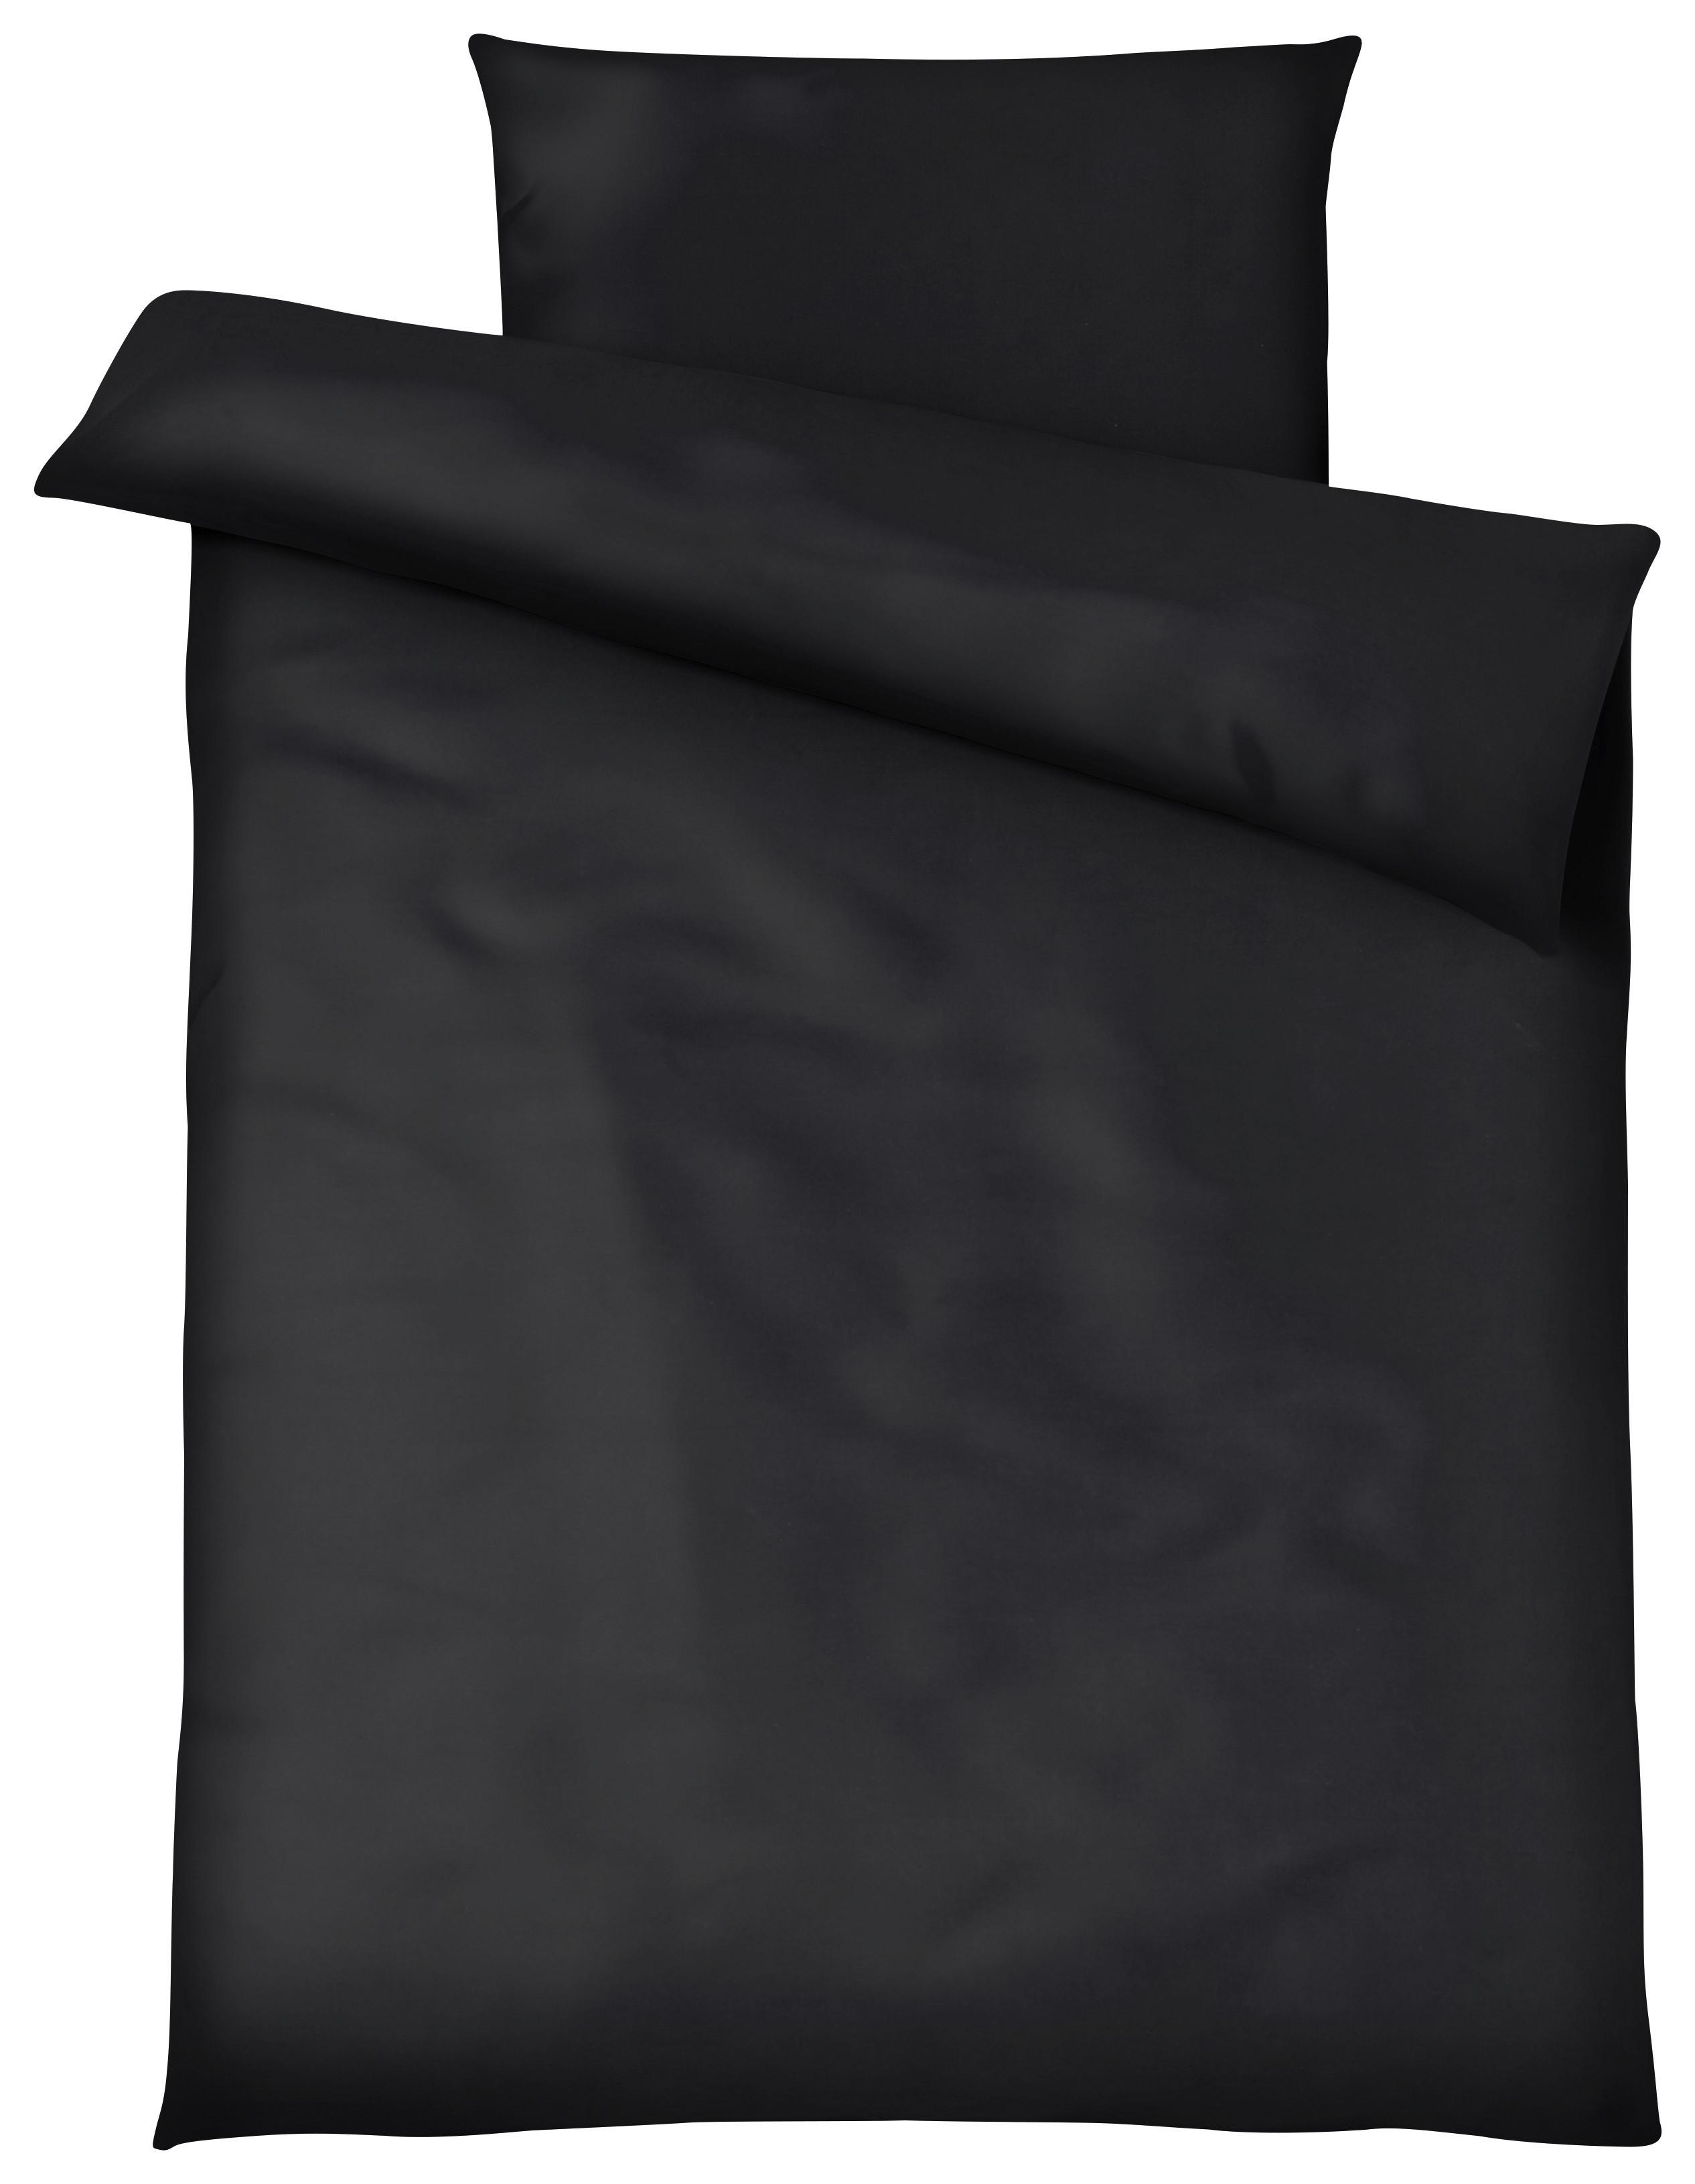 Posteľná Bielizeň Blacky, 140/200cm, Čierna - čierna, Moderný, textil (140/200cm) - Modern Living